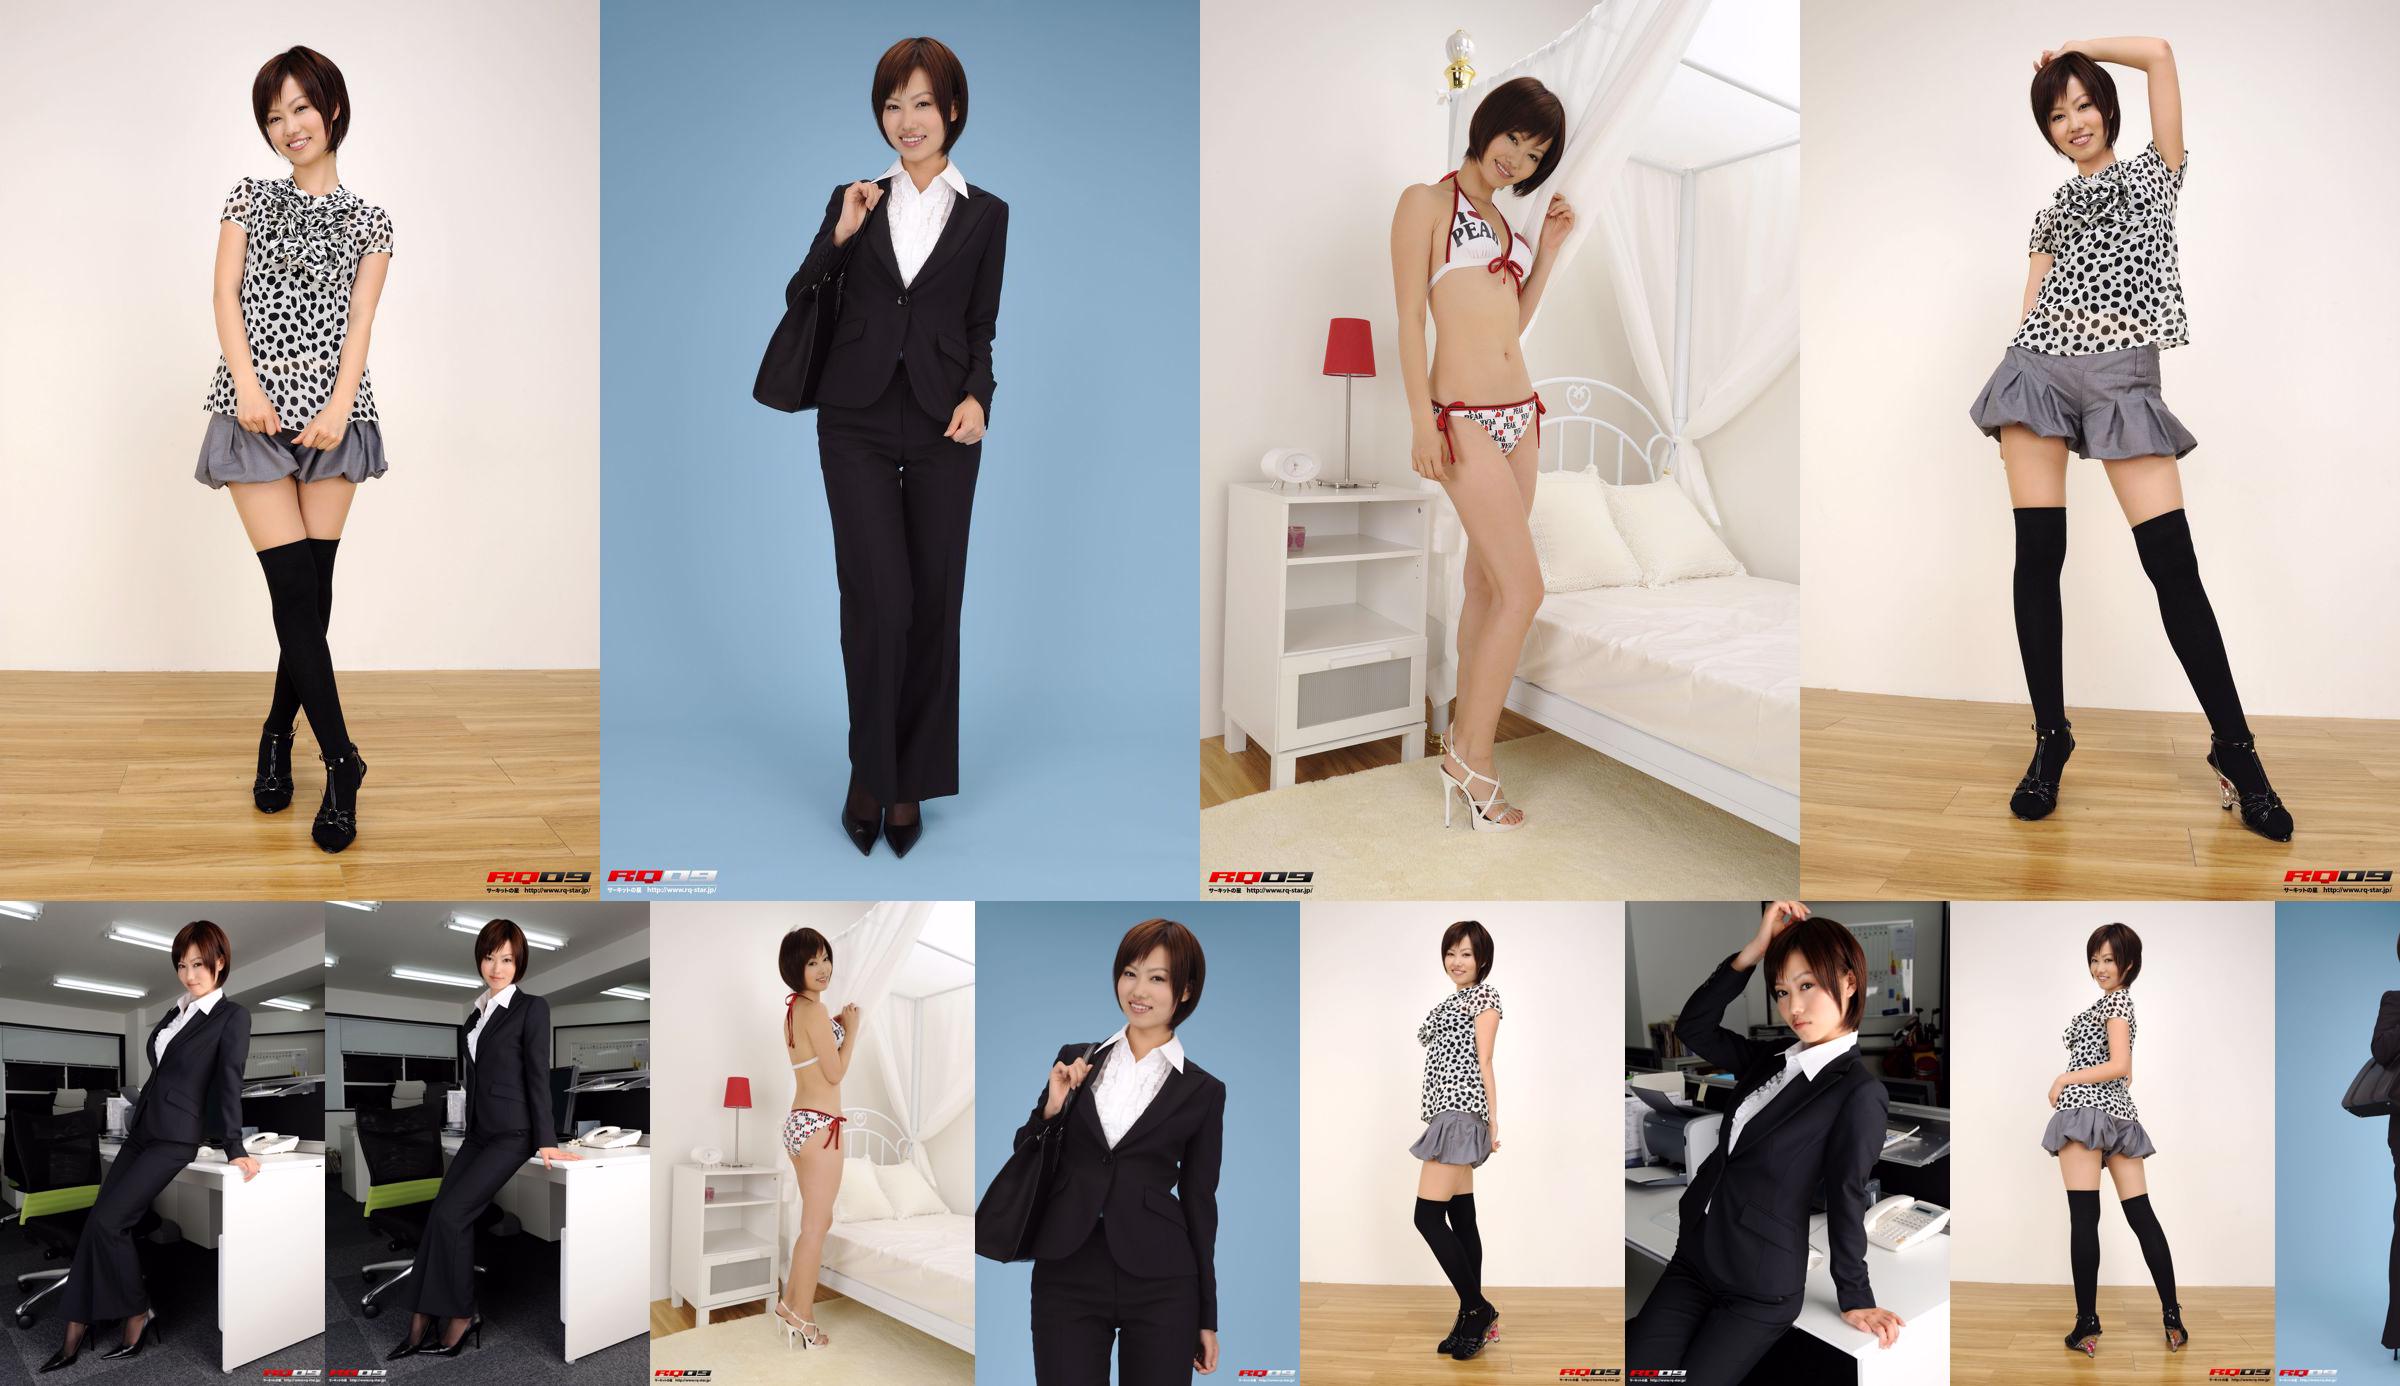 [RQ-STAR] NO.00155 Fujimura Misato / Fujimura Edison Recruit Style Office Beauty-Serie No.585523 Seite 13